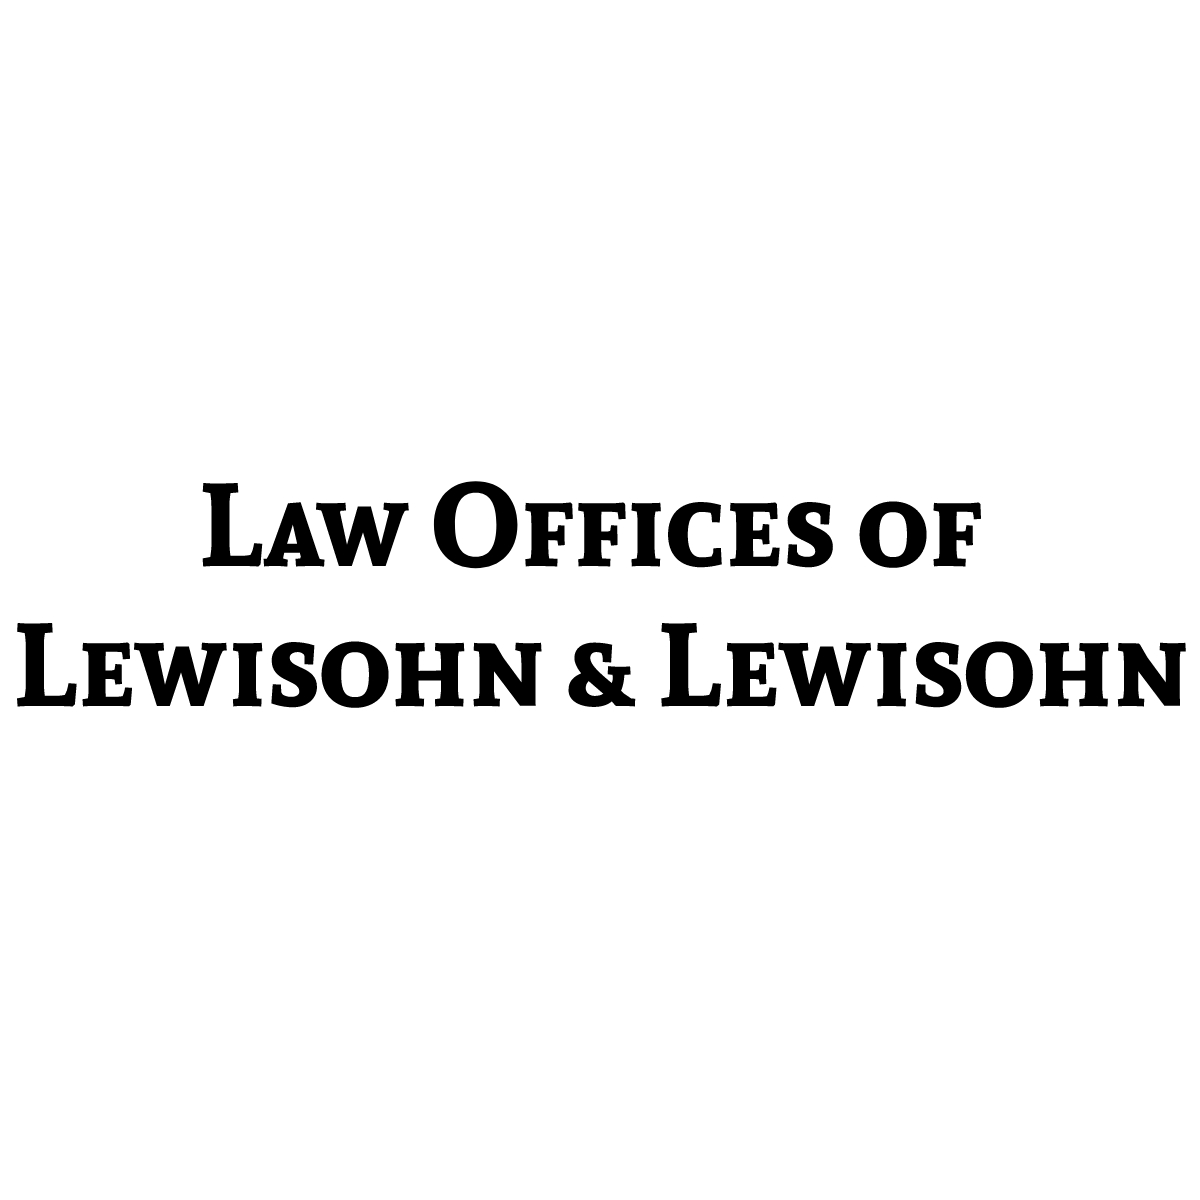 Law Offices of Lewisohn & Lewisohn